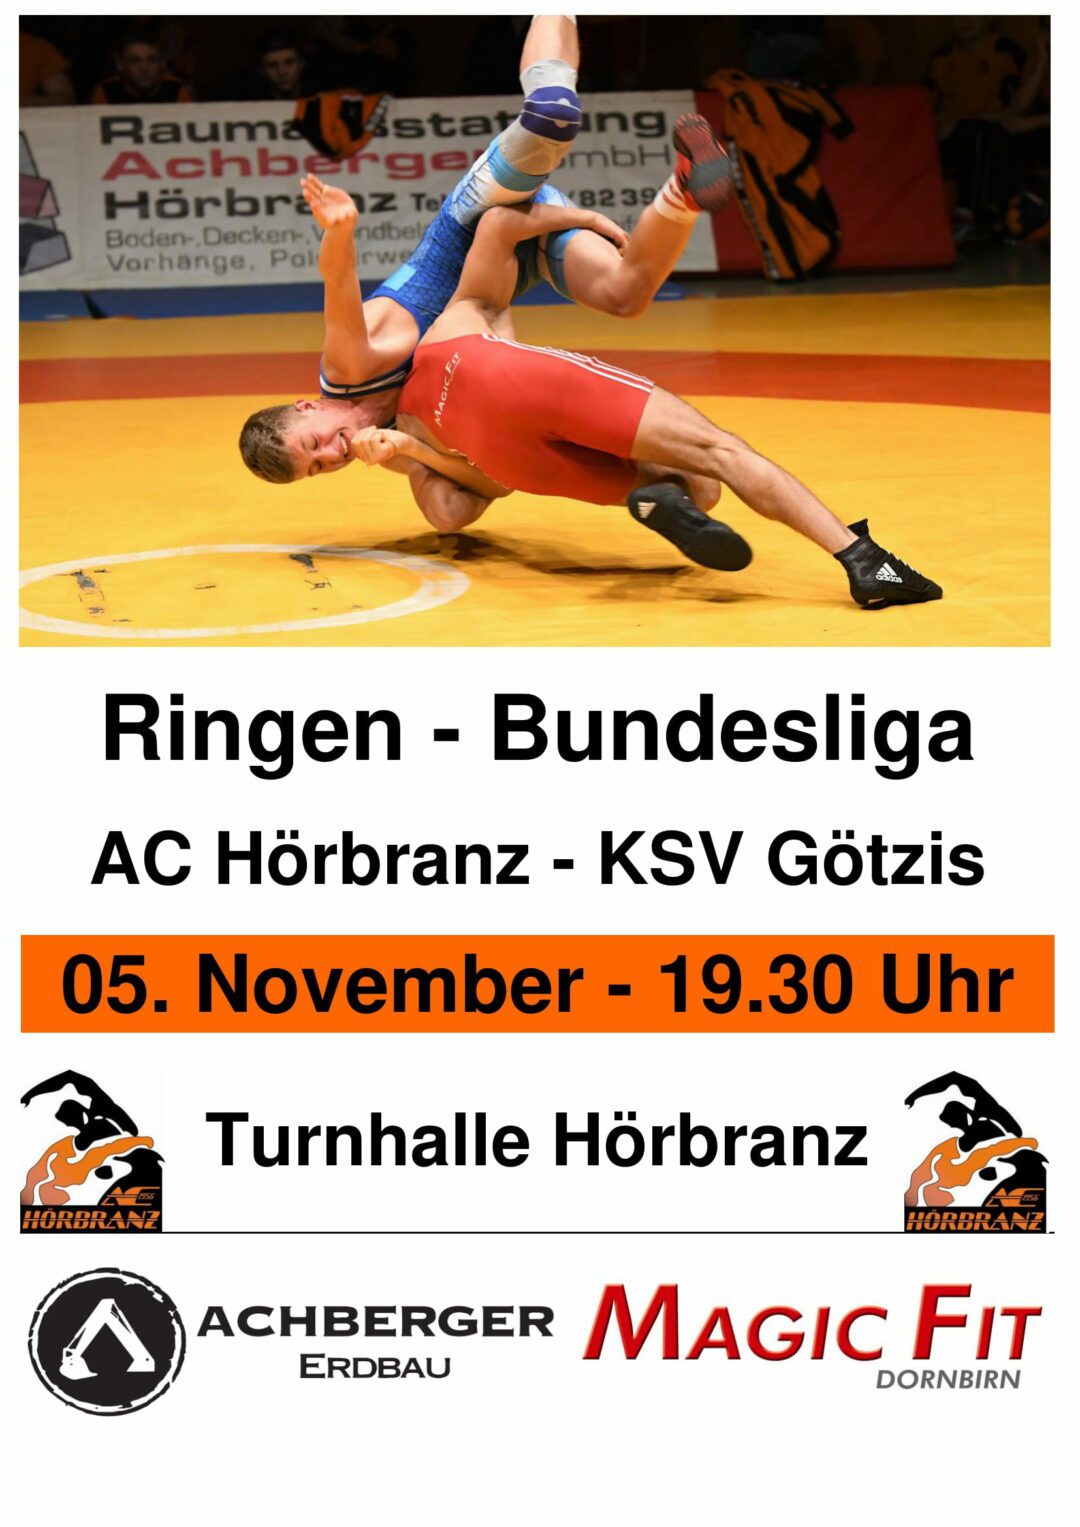 Ringer Bundesliga am 05.11. in Hörbranz